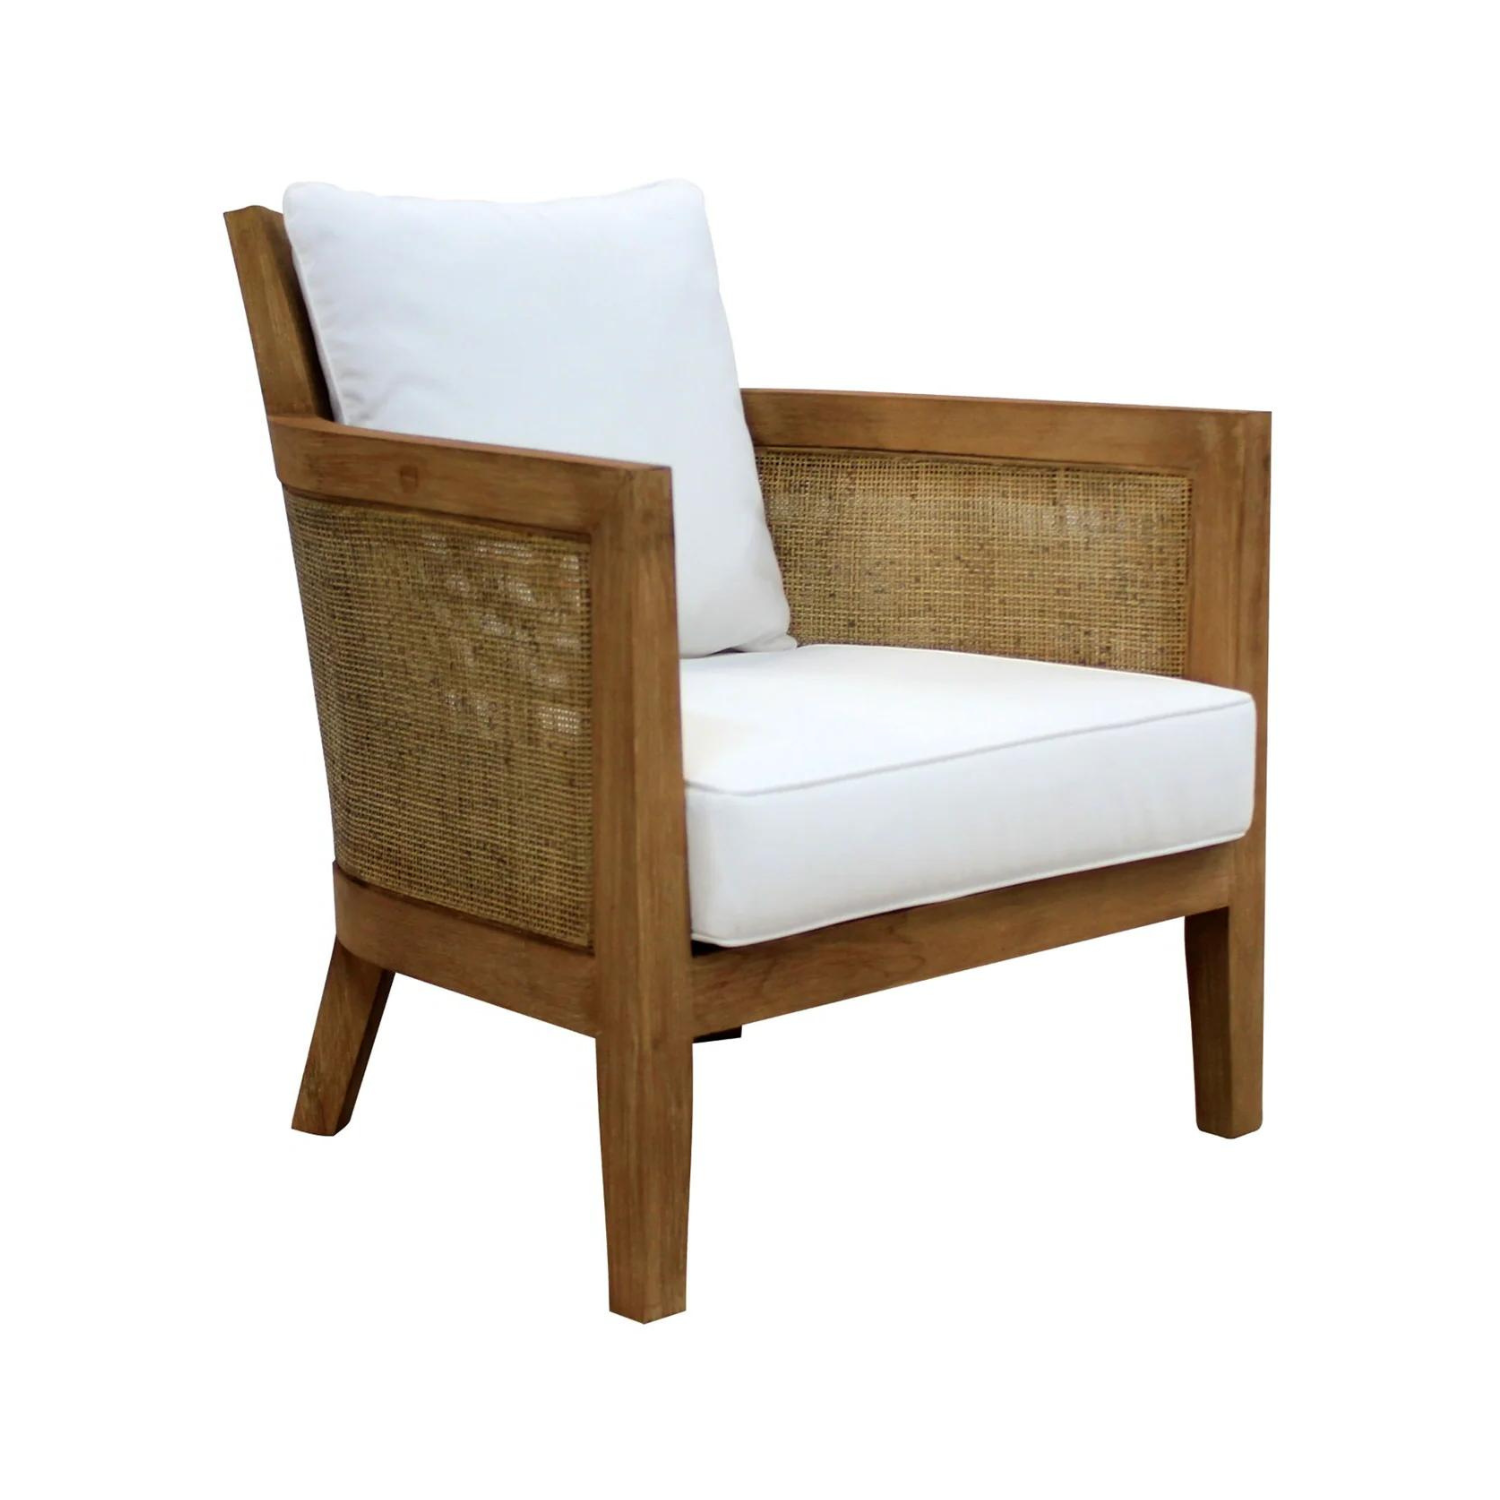 Mumba Chair White Wash